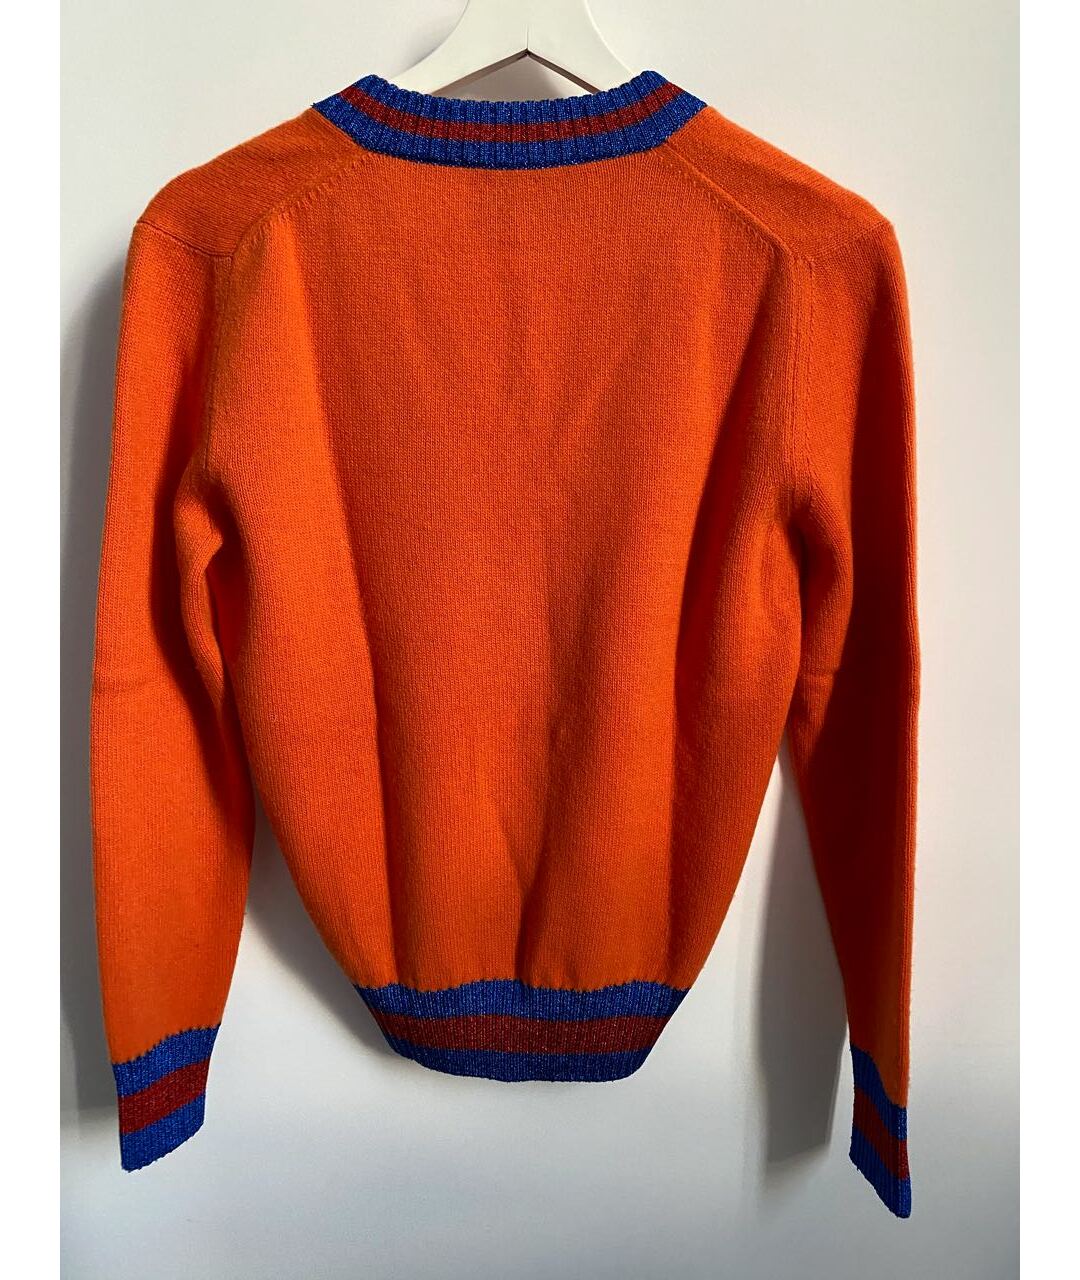 GUCCI Оранжевый шерстяной джемпер / свитер, фото 2